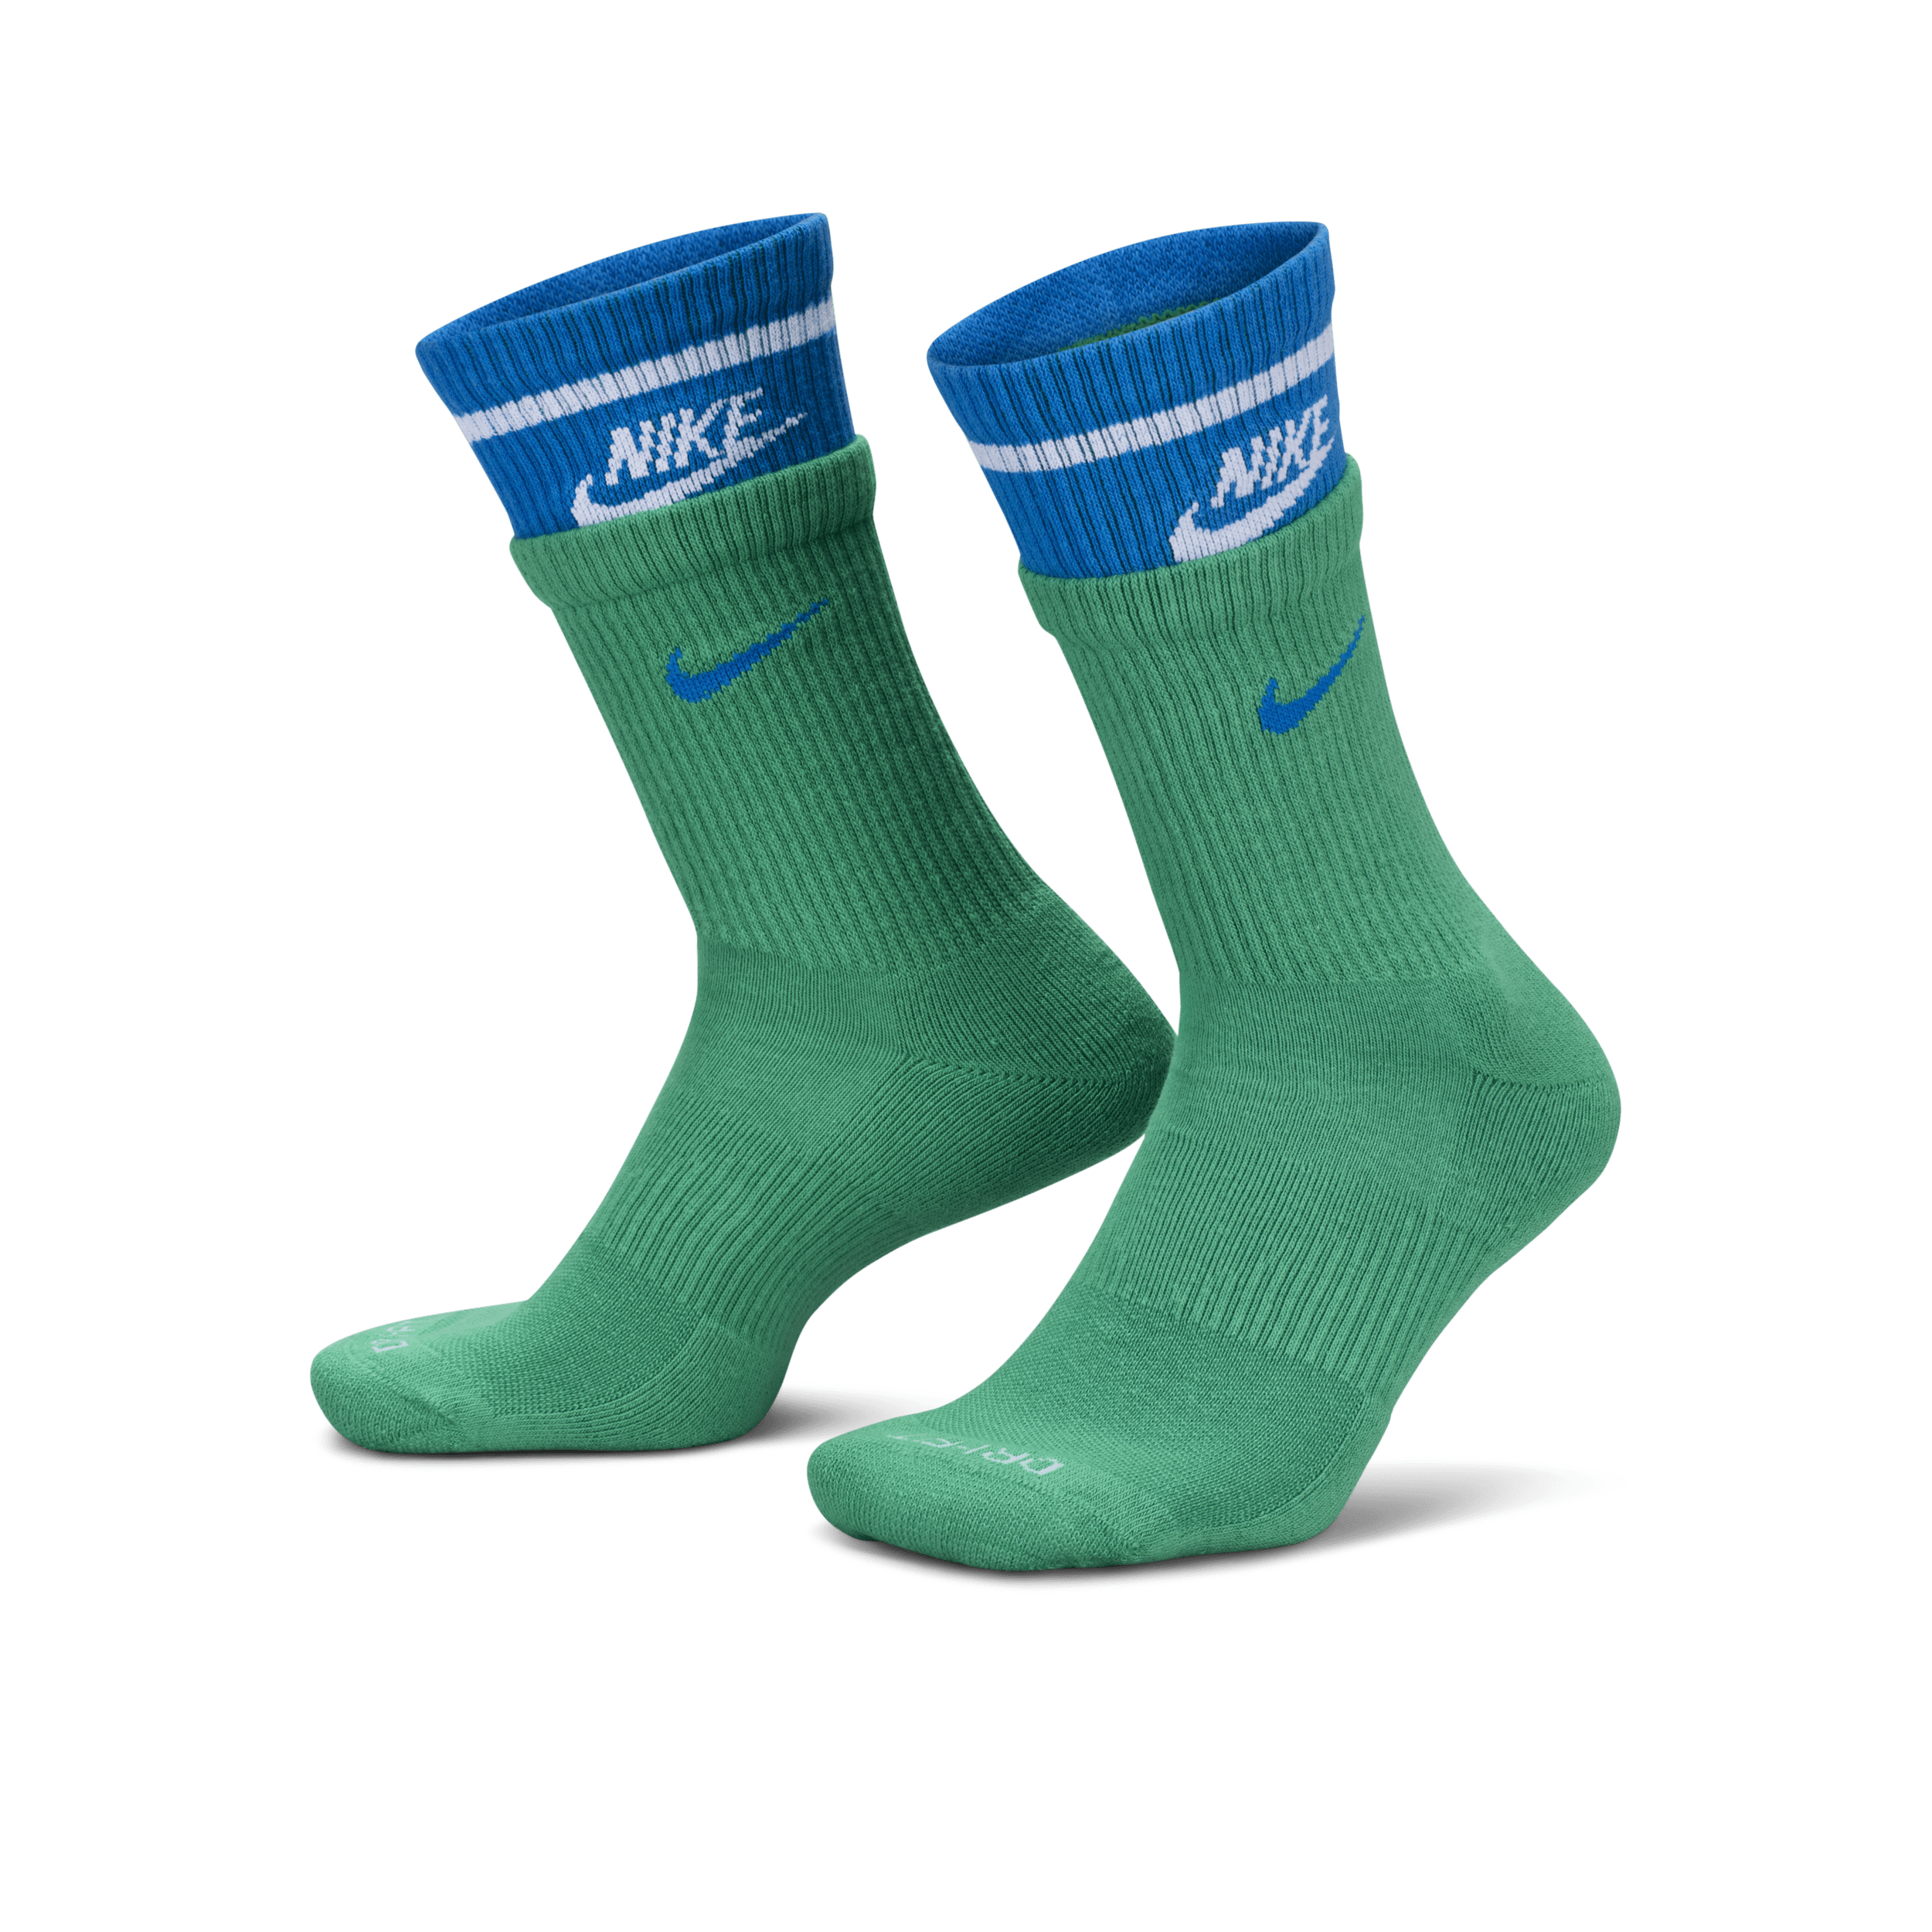 Nike Everyday Plus Crew sokken met demping (1 paar) - Groen